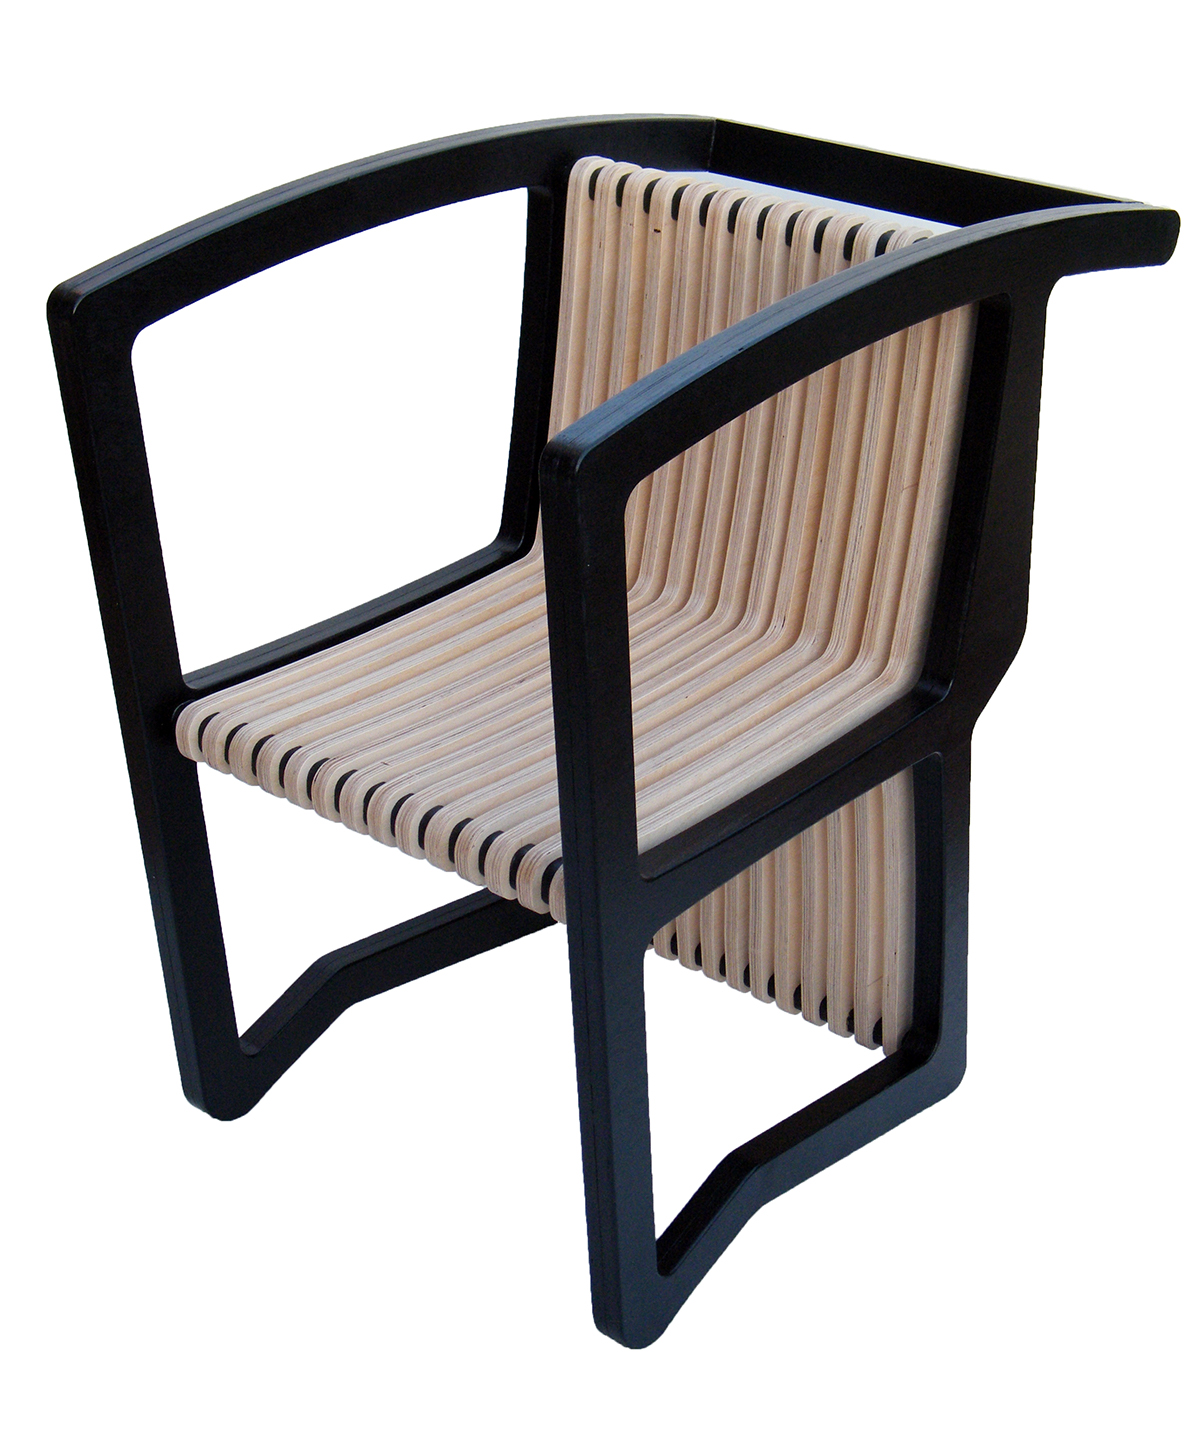 rocking chair chair beach chair bench dynamic chair  industrial design chair furniture chair design 4 in 1 modular design